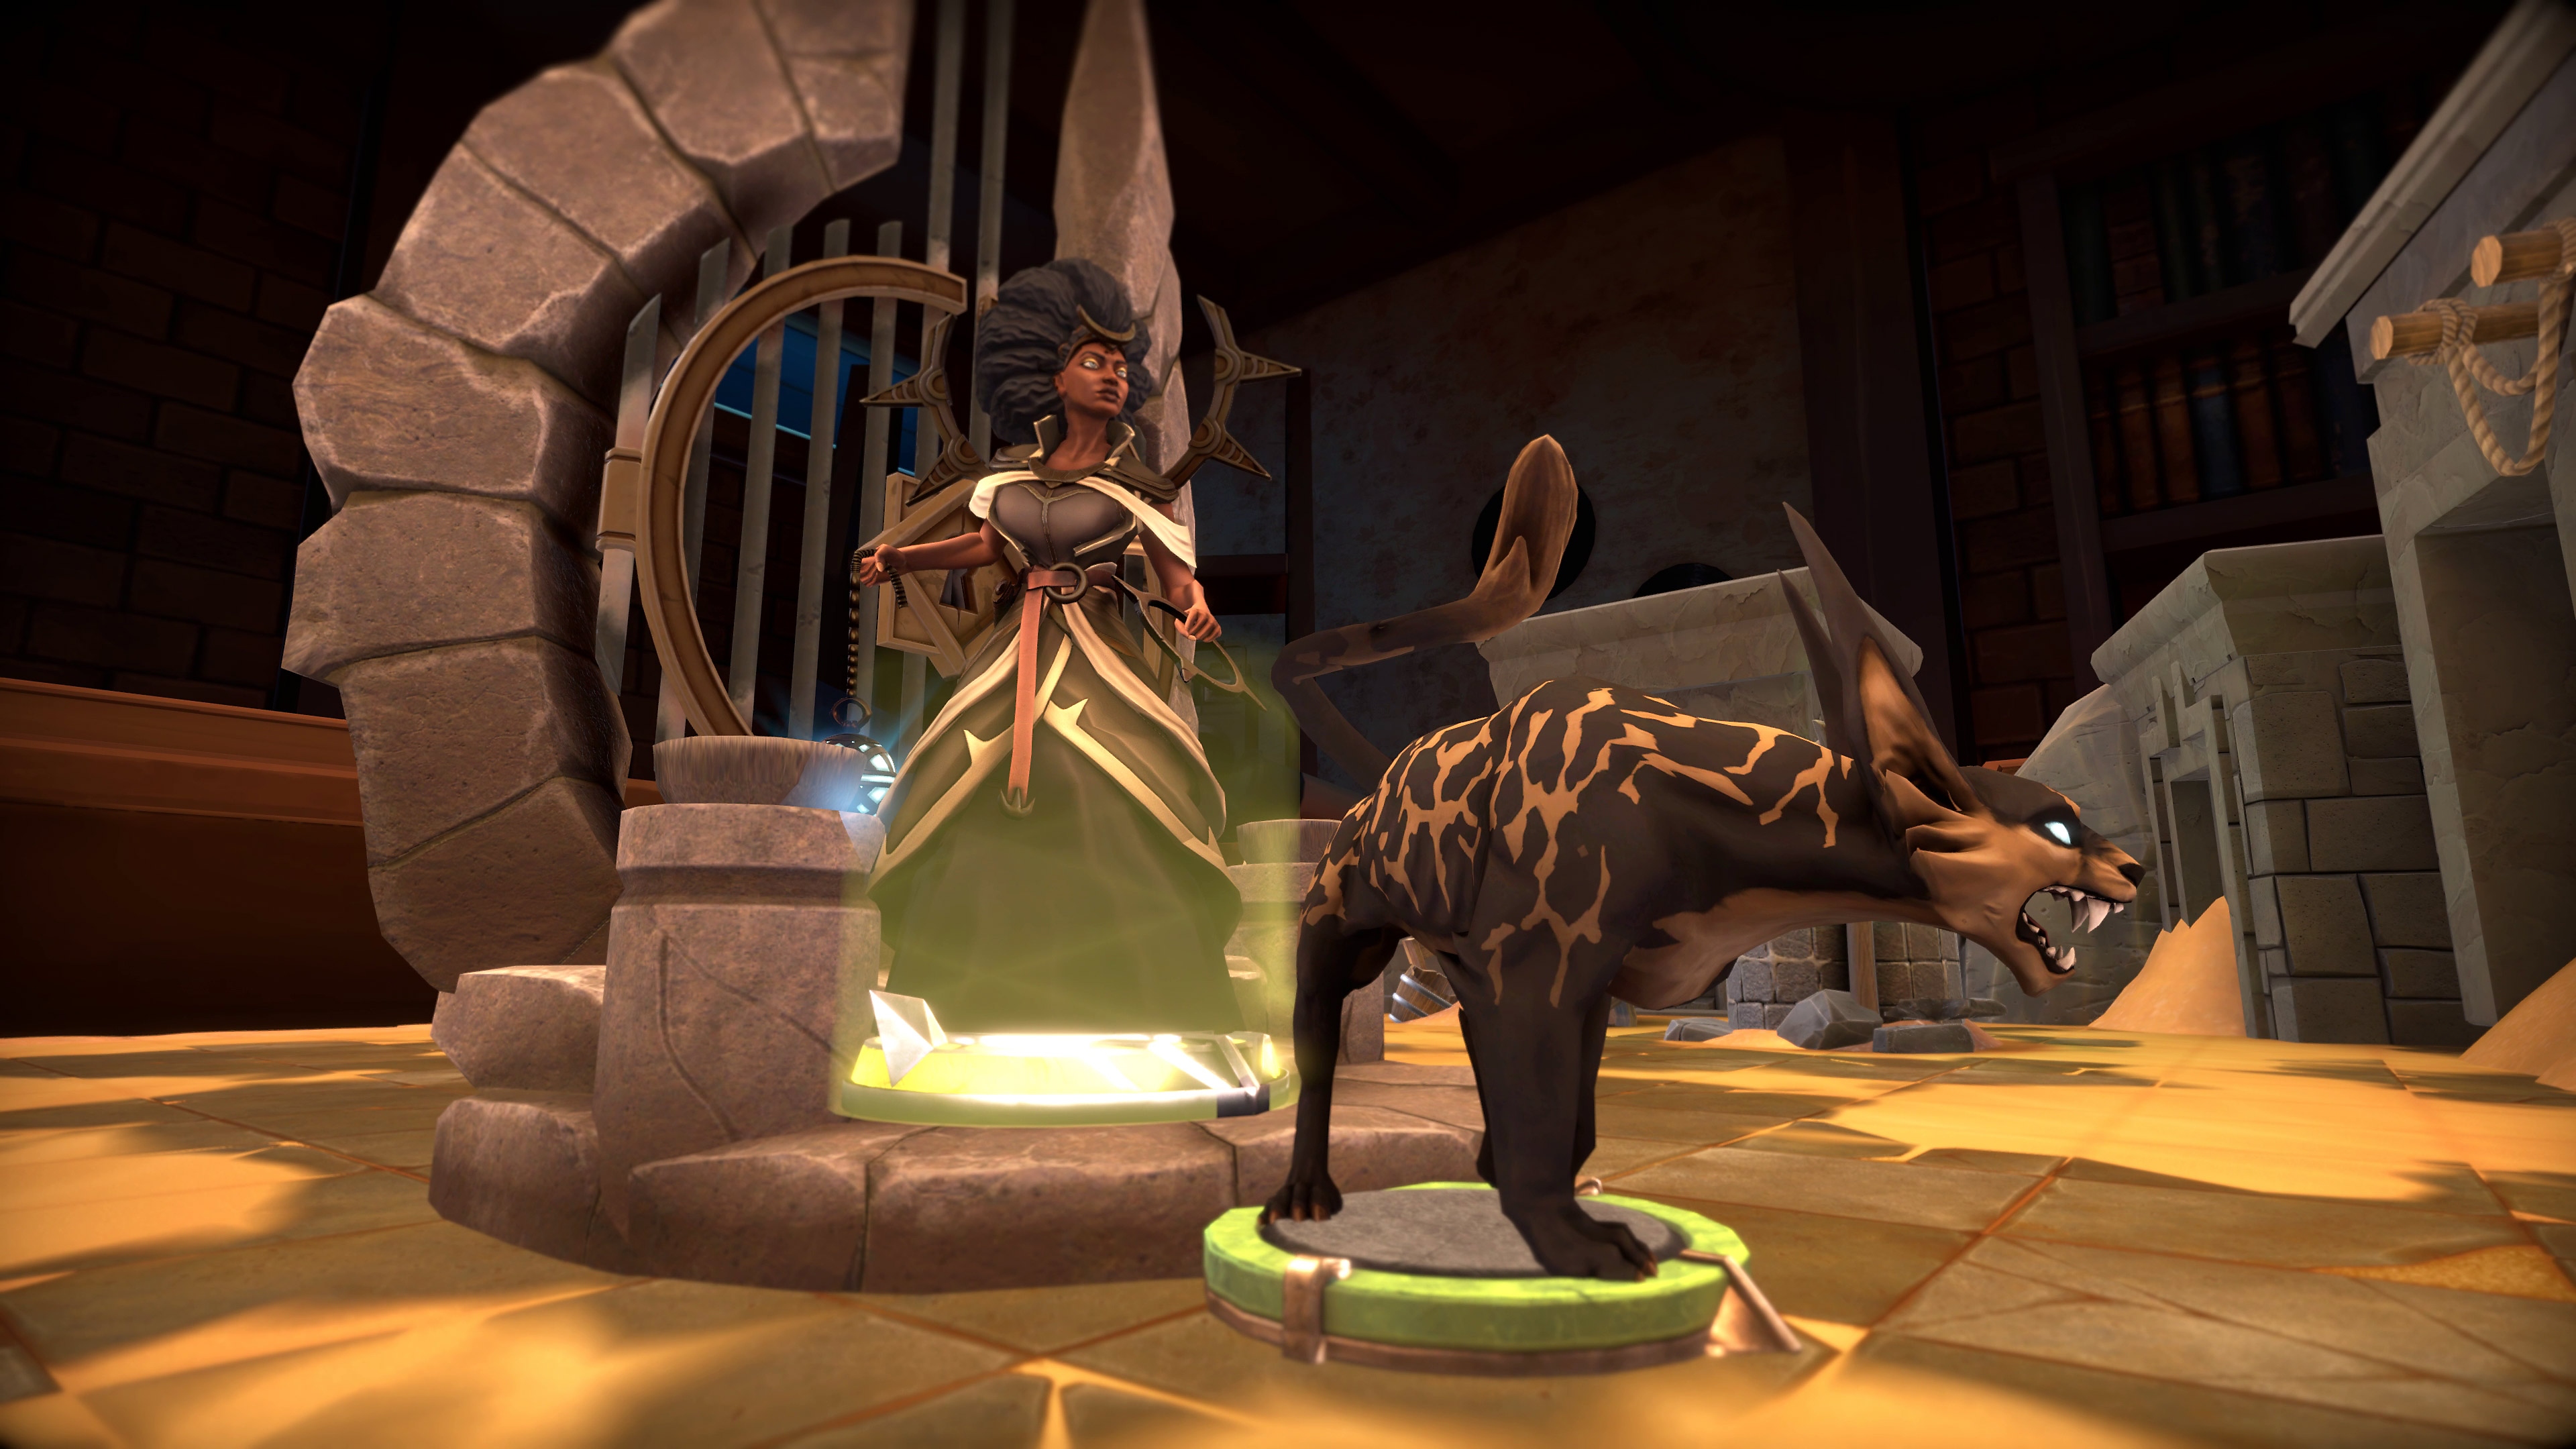 Demeo - Istantanea della schermata che mostra una creatura ringhiante simile a una iena, pronta all'attacco